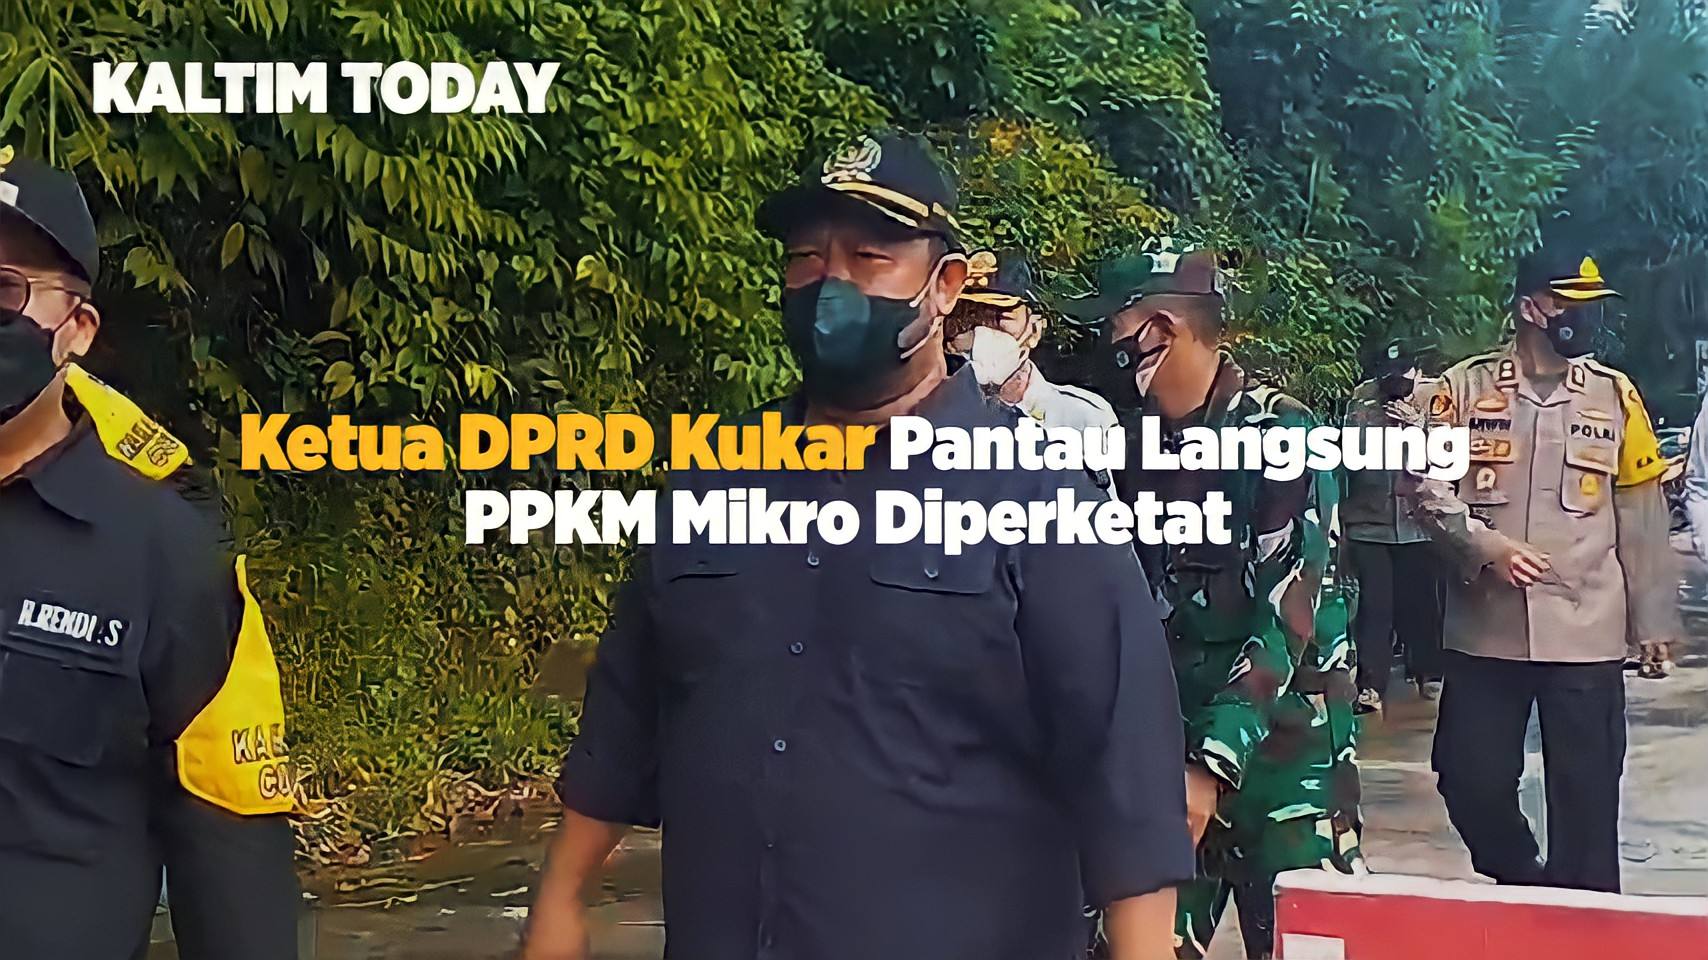 Ketua DPRD Kukar Abdul Rasid Pantau Langsung PPKM Mikro Diperketat